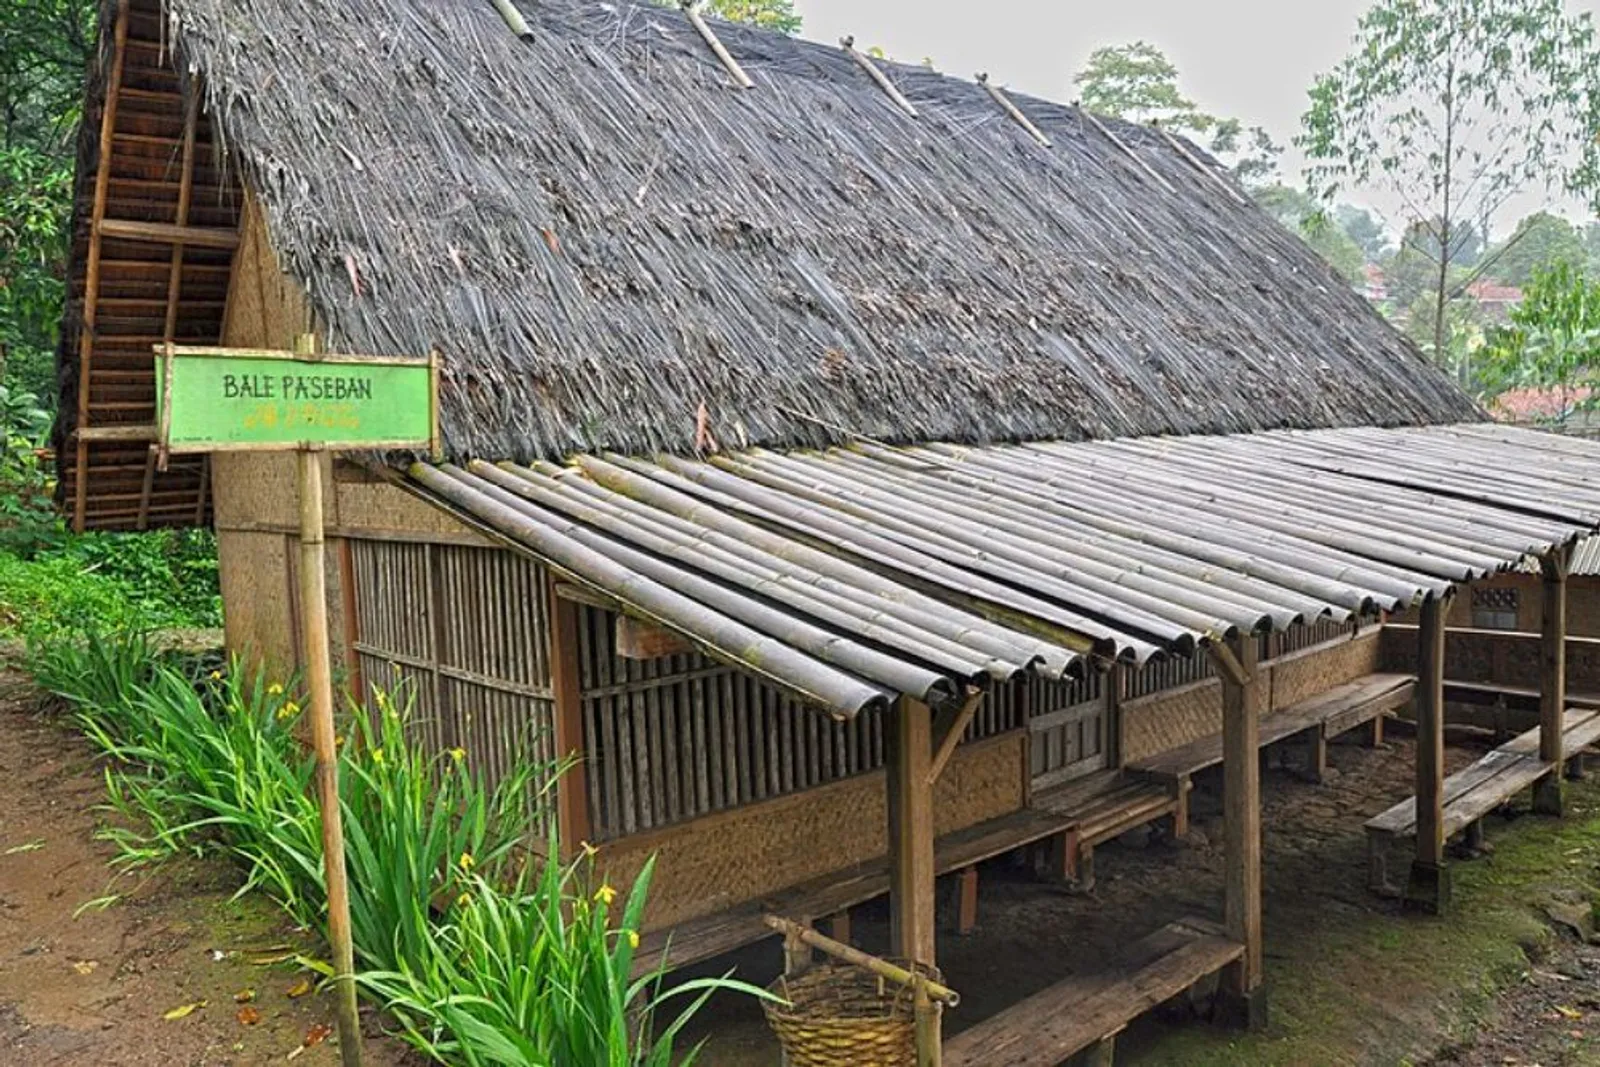 7 Rumah Adat Jawa Barat, Terinspirasi dari Binatang